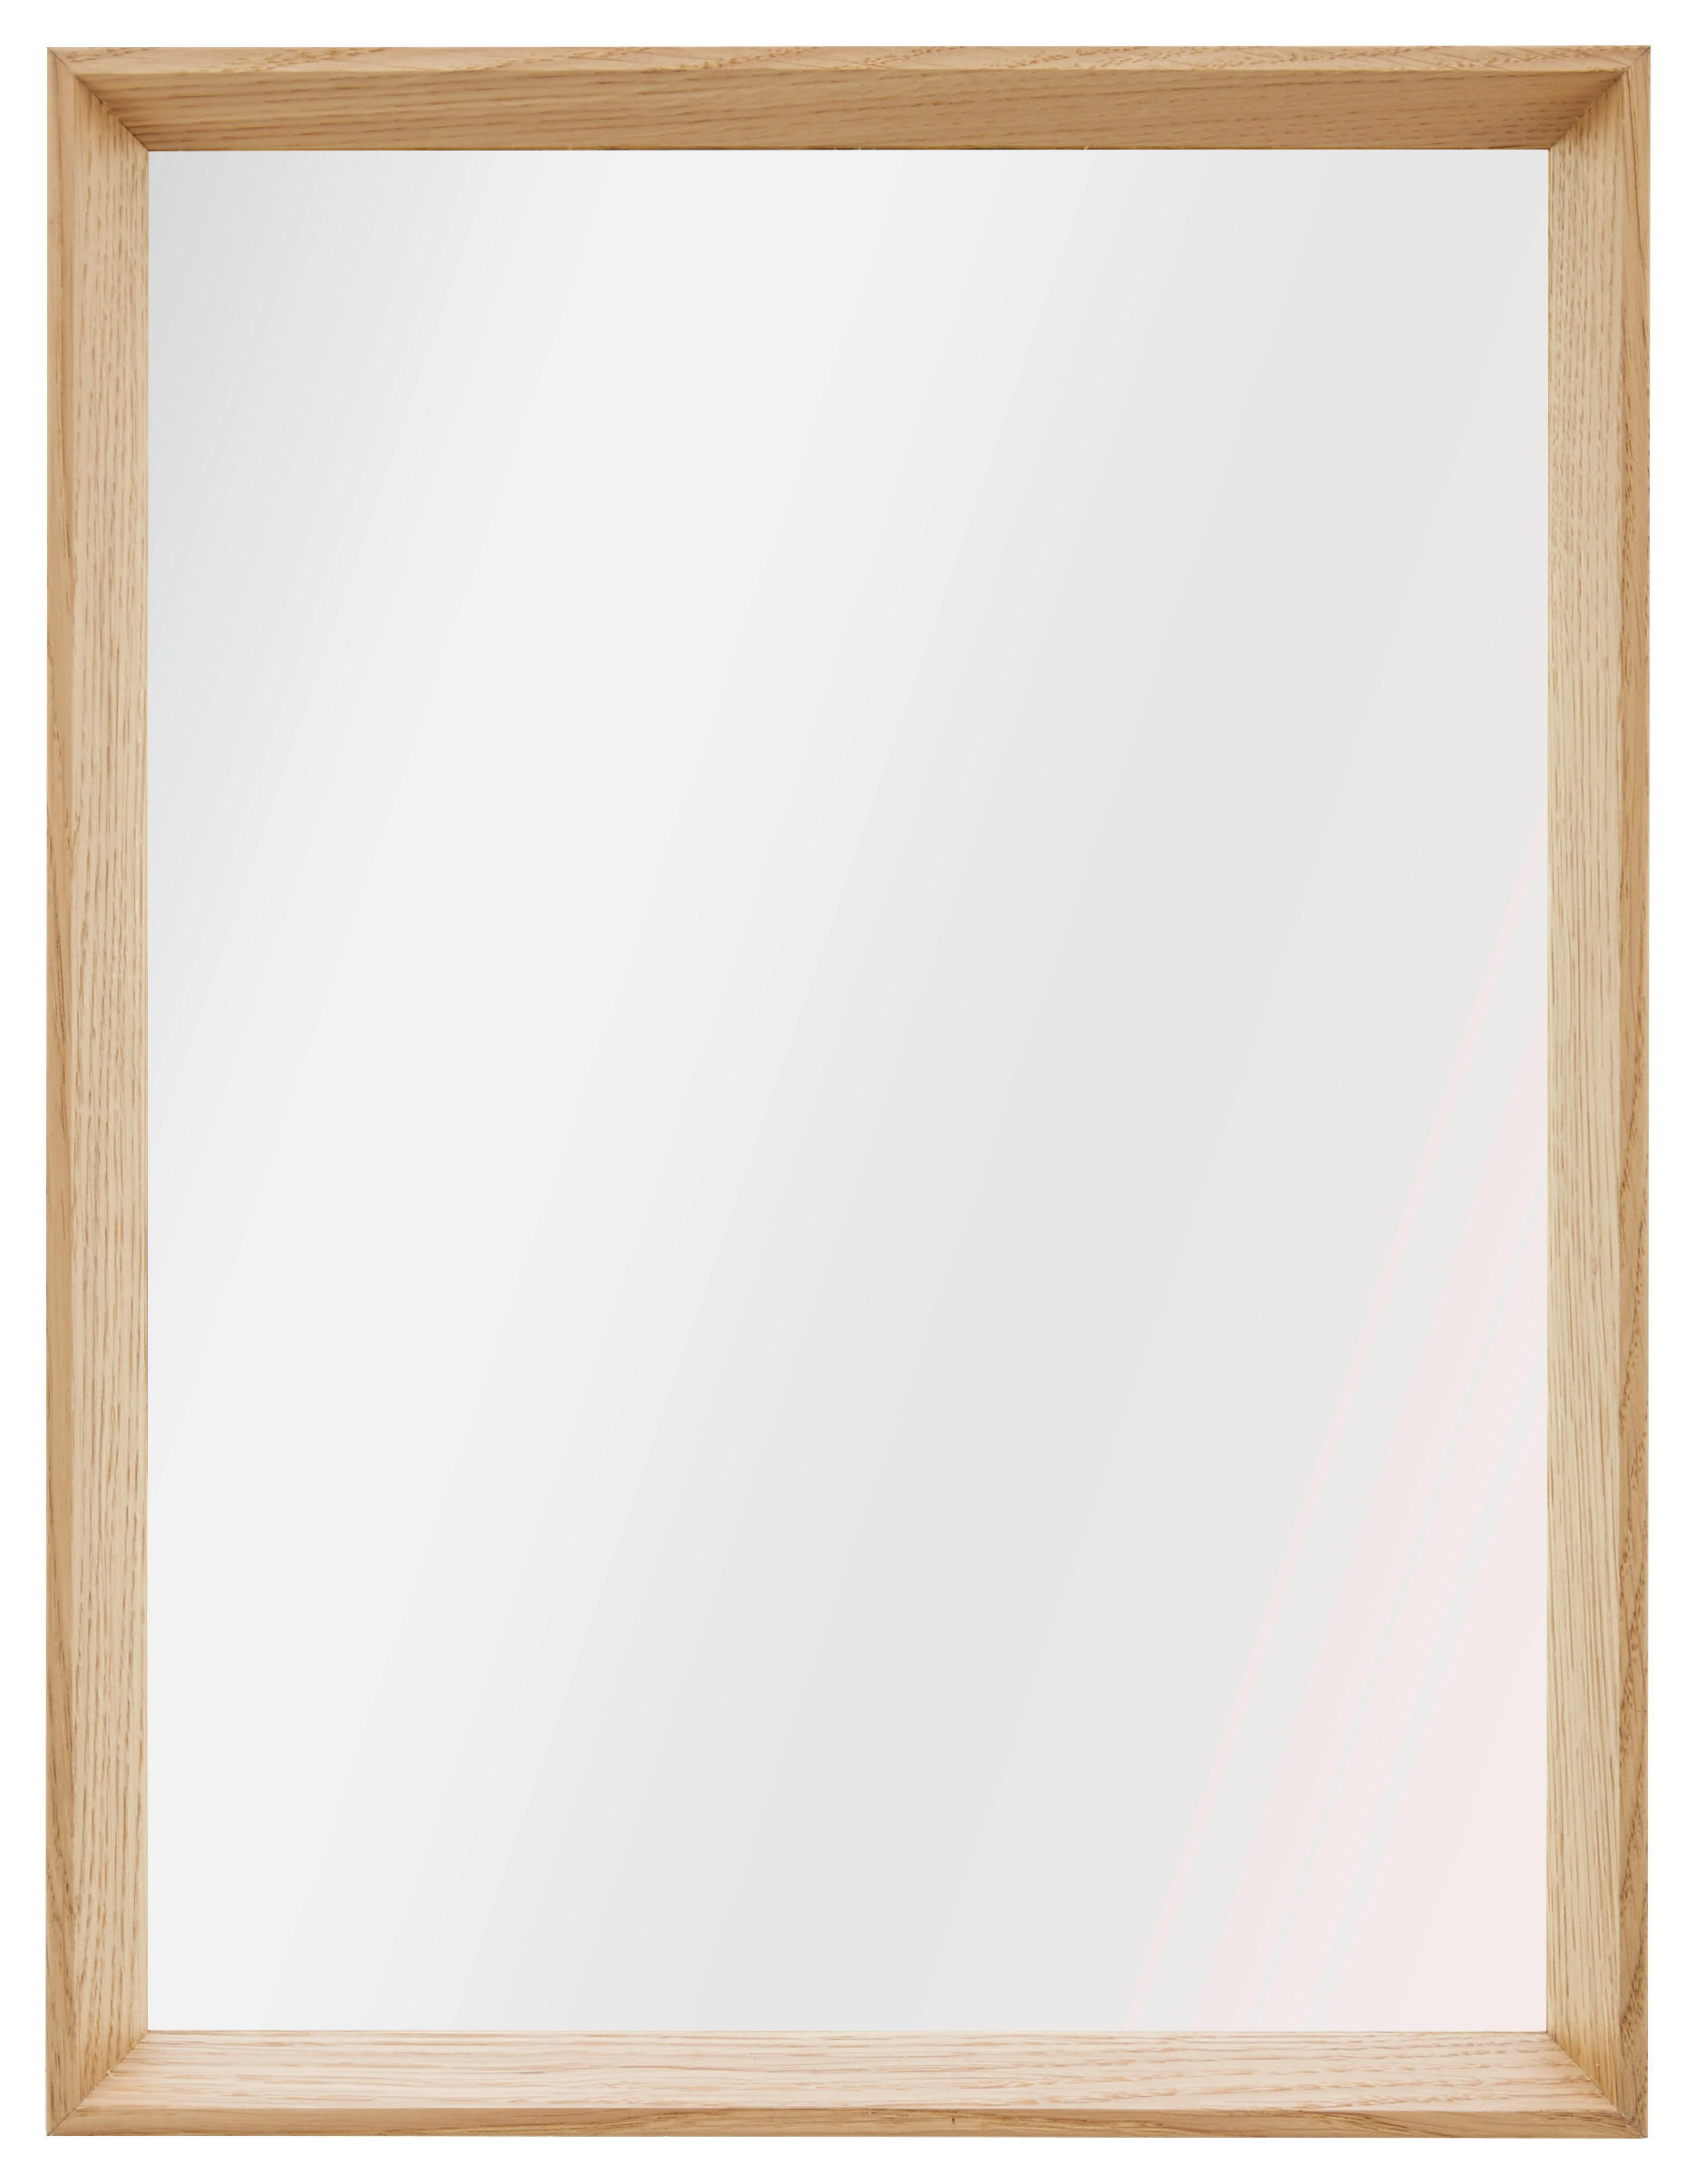 Xora NÁSTĚNNÉ ZRCADLO 32.5/42.5/4 cm - barvy dubu - dub